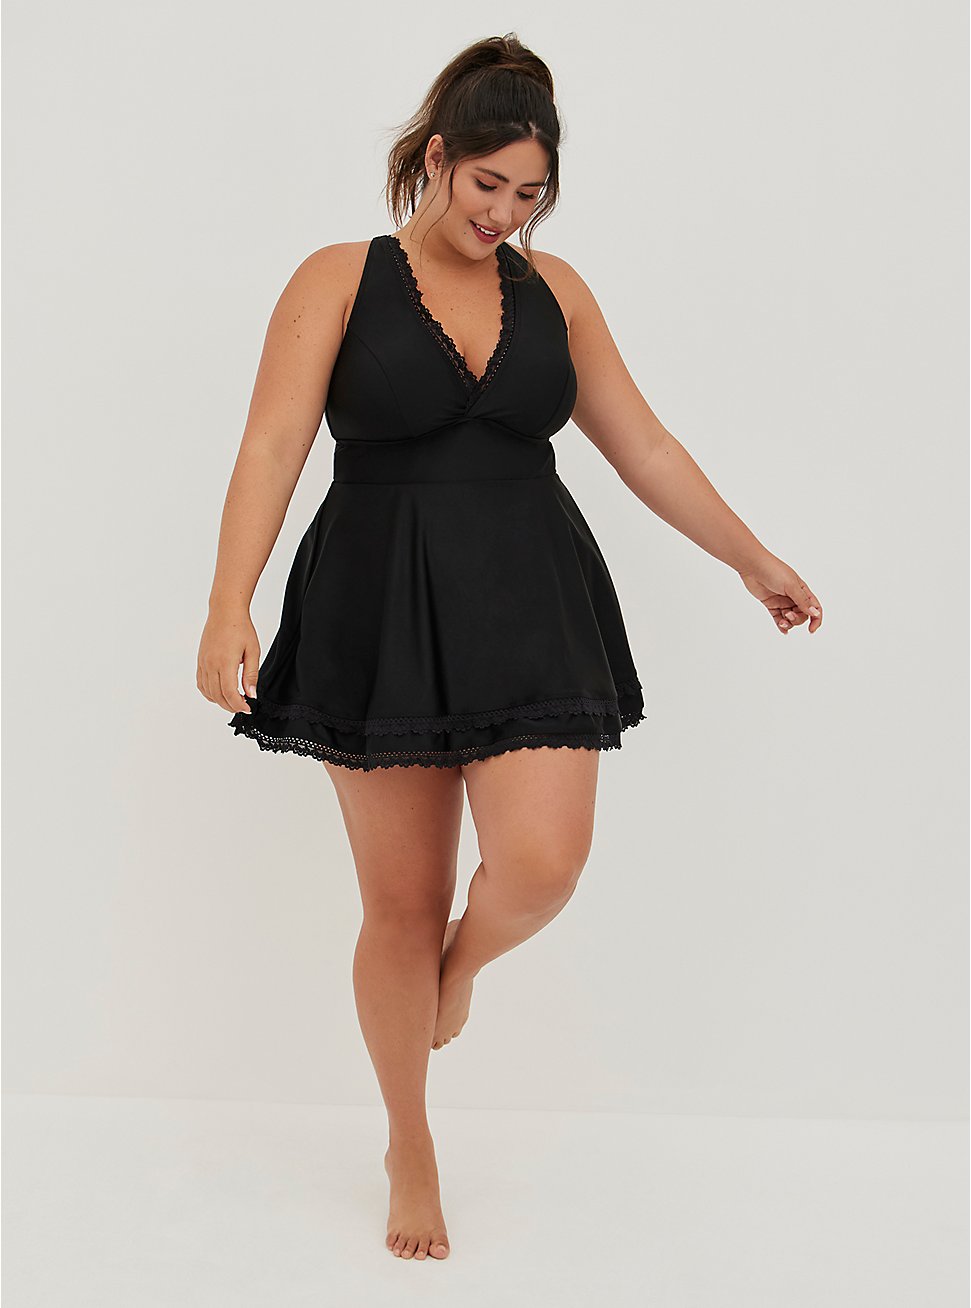 Plus Size Lace Trim Swim Dress - Black, DEEP BLACK, hi-res